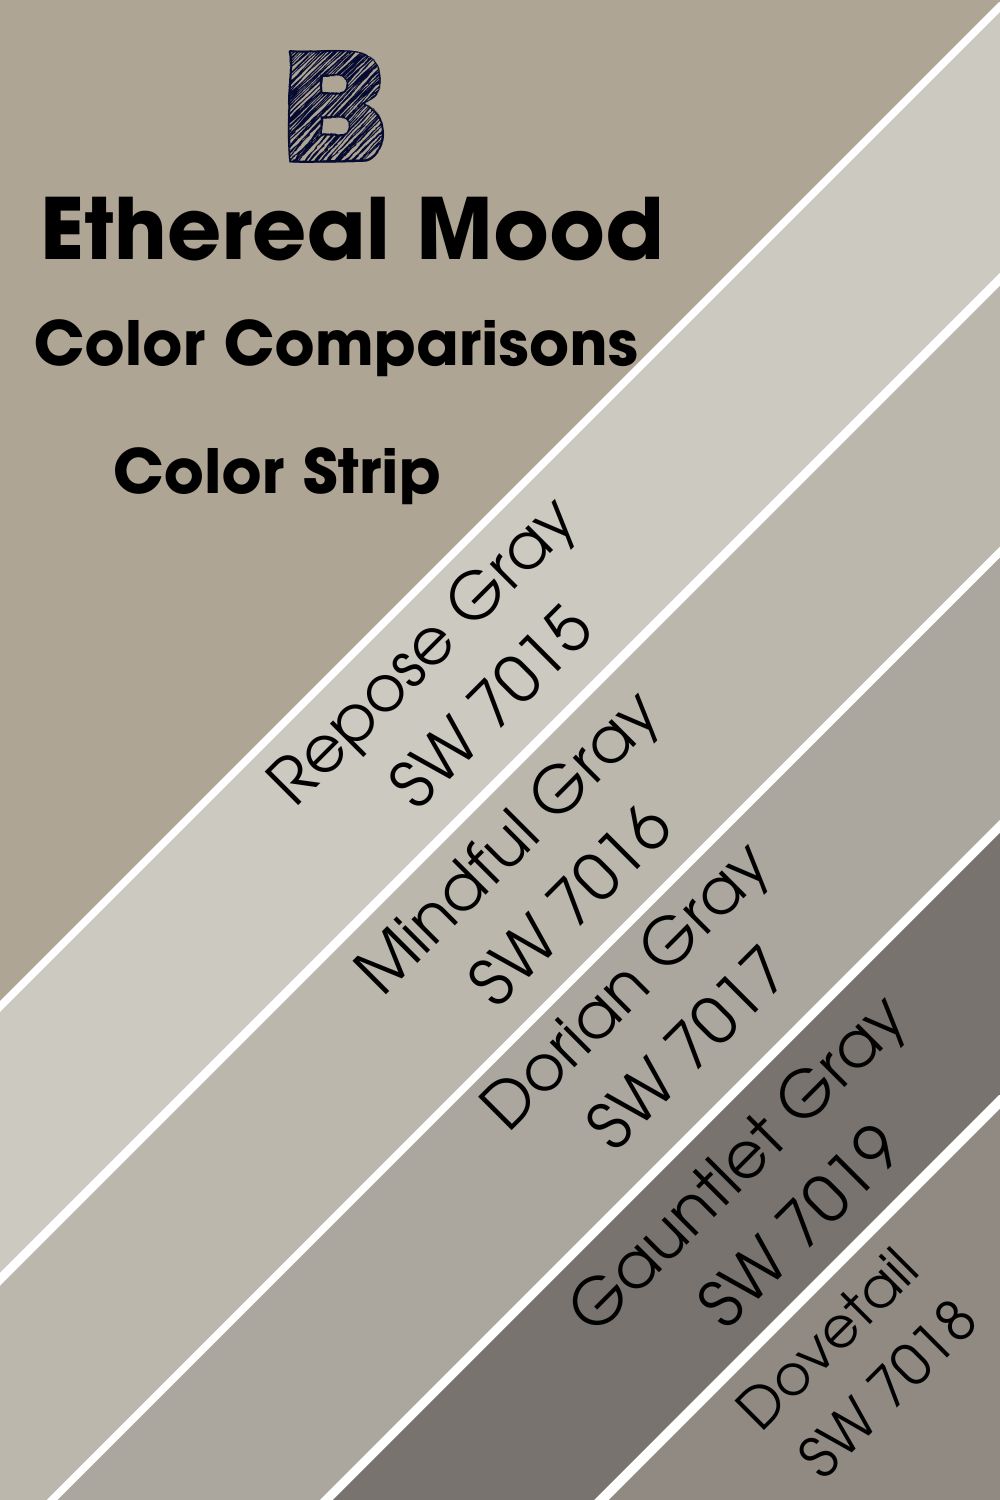 Color Comparisons